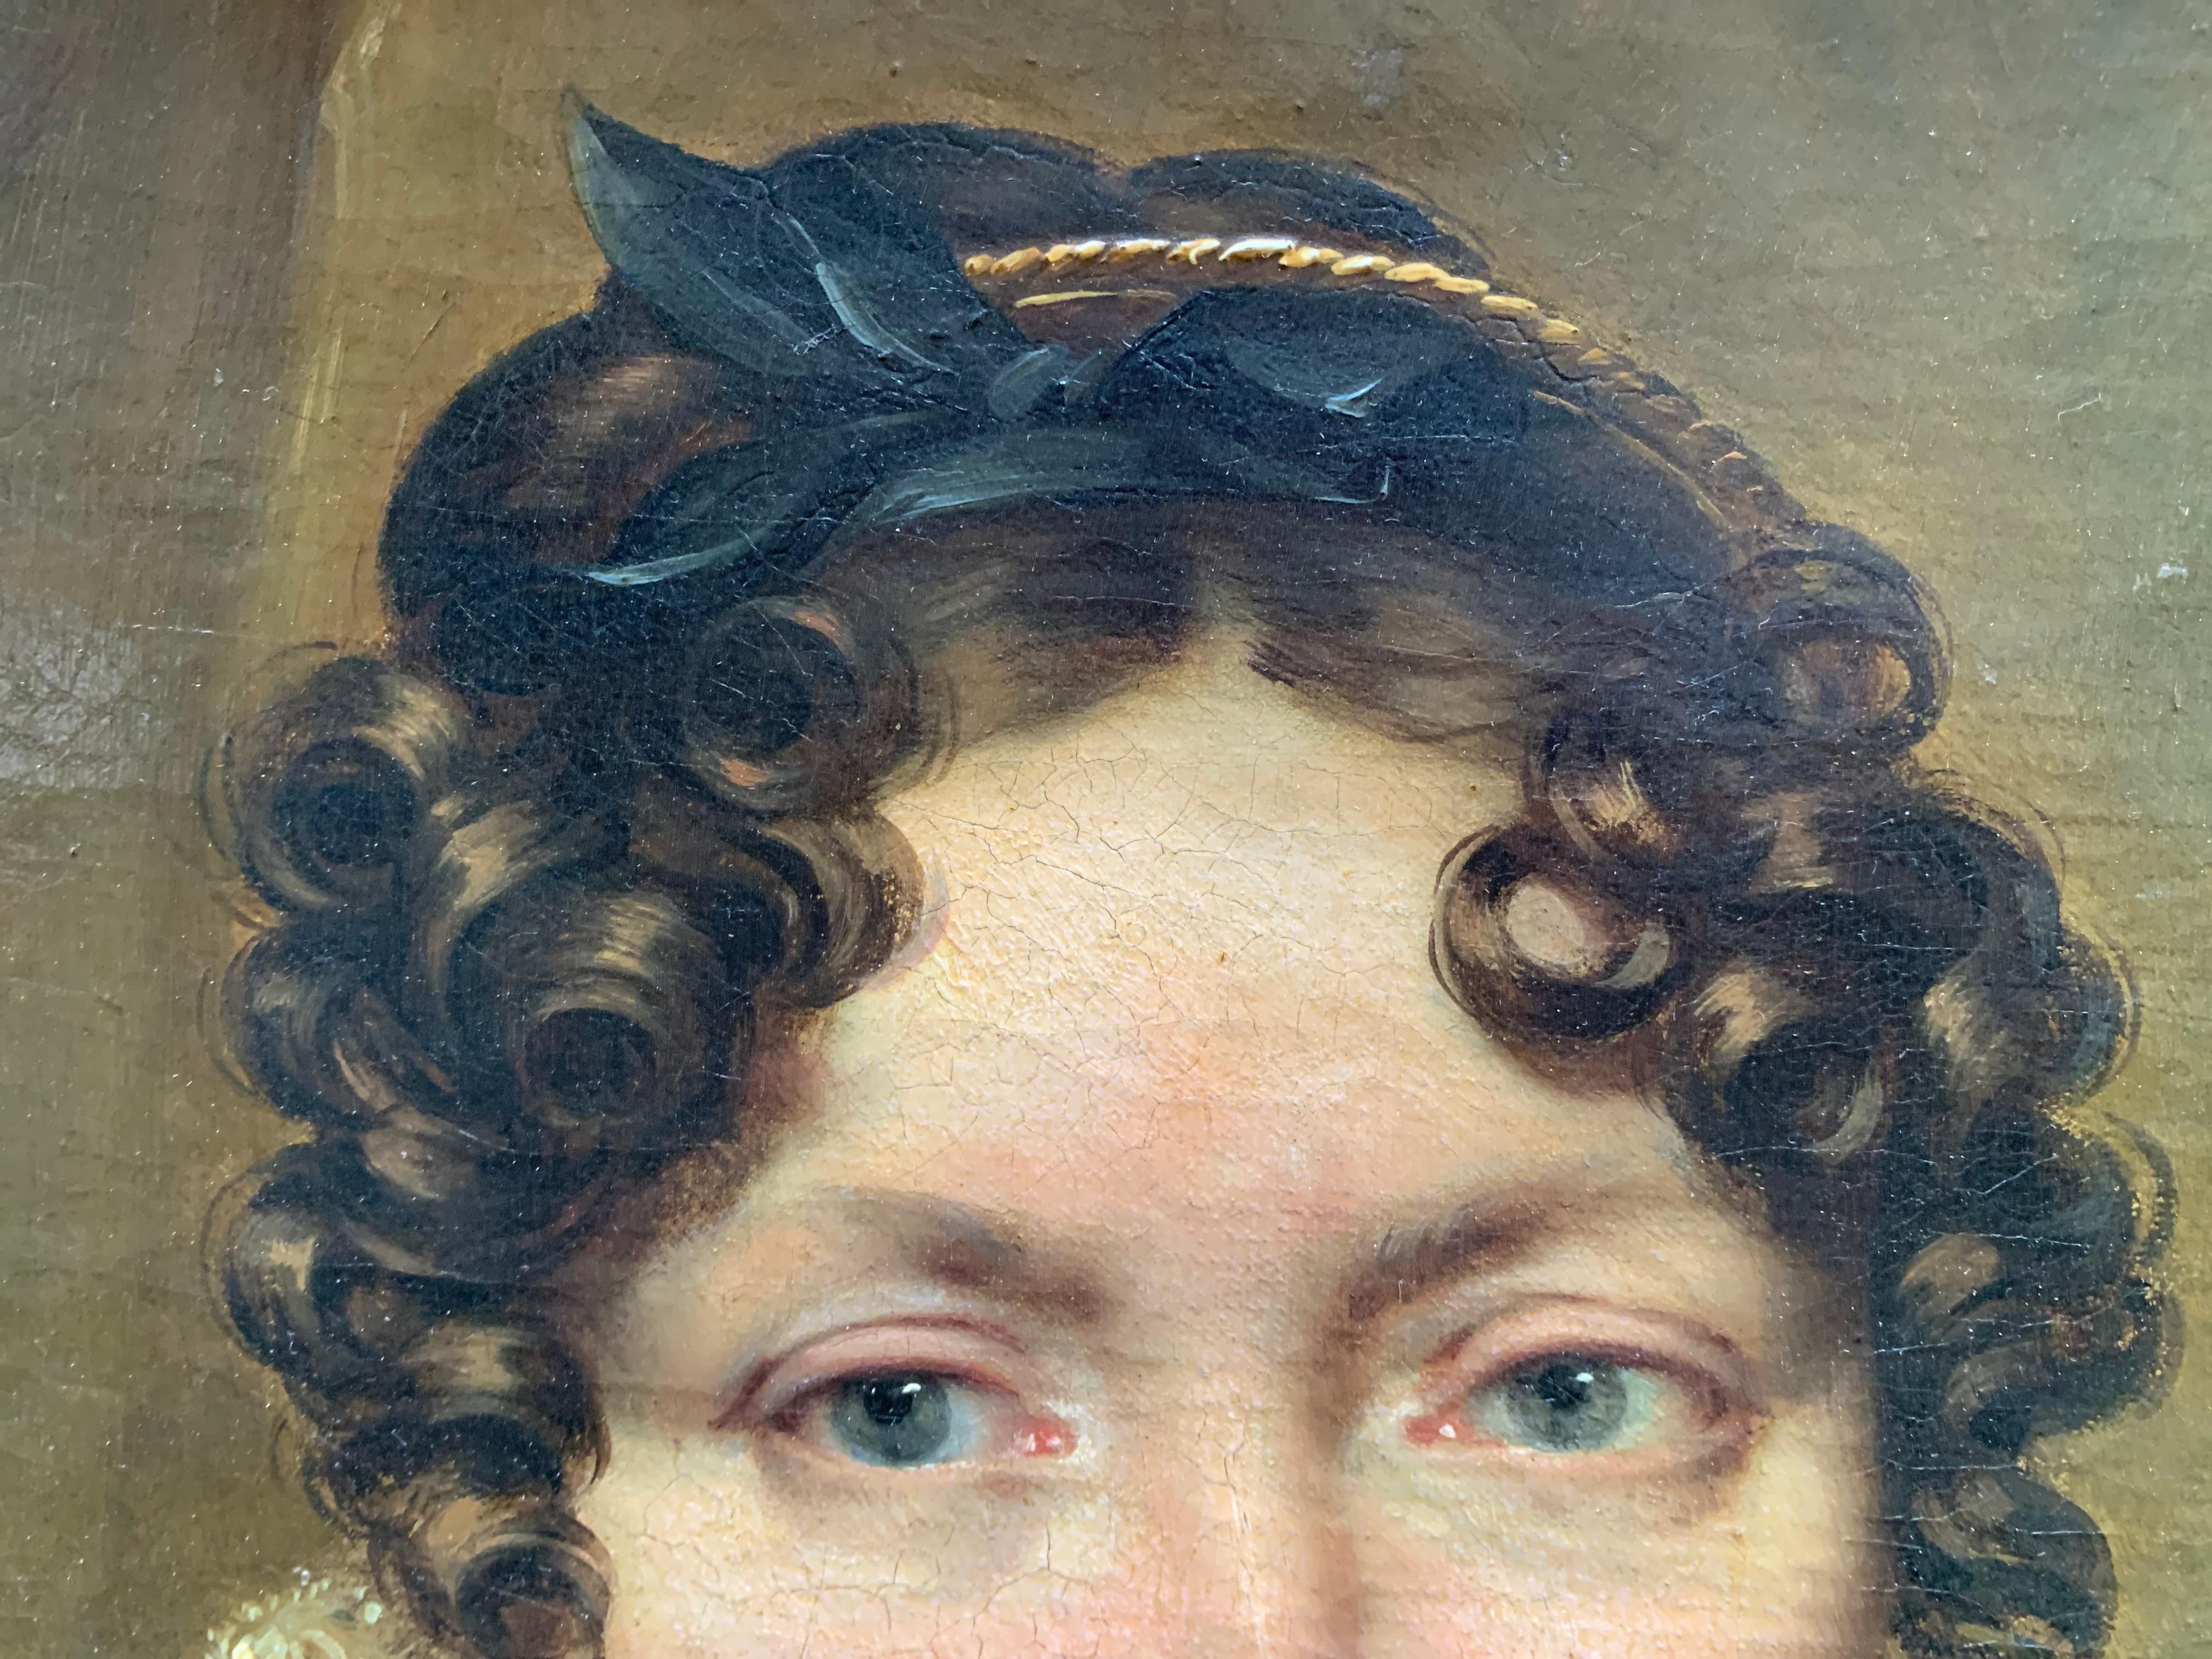 Ca. 1820

Portrait of a Woman.

Léon Cogniet (1794-1880, Paris), attributed.

French school of 19th century.

Tecnicque: oils on canvas.

Dimensions: 70cm x 61cm

20th century wooden frame.

Old attribution to Léon Cogniet (1794-1880, Paris) is